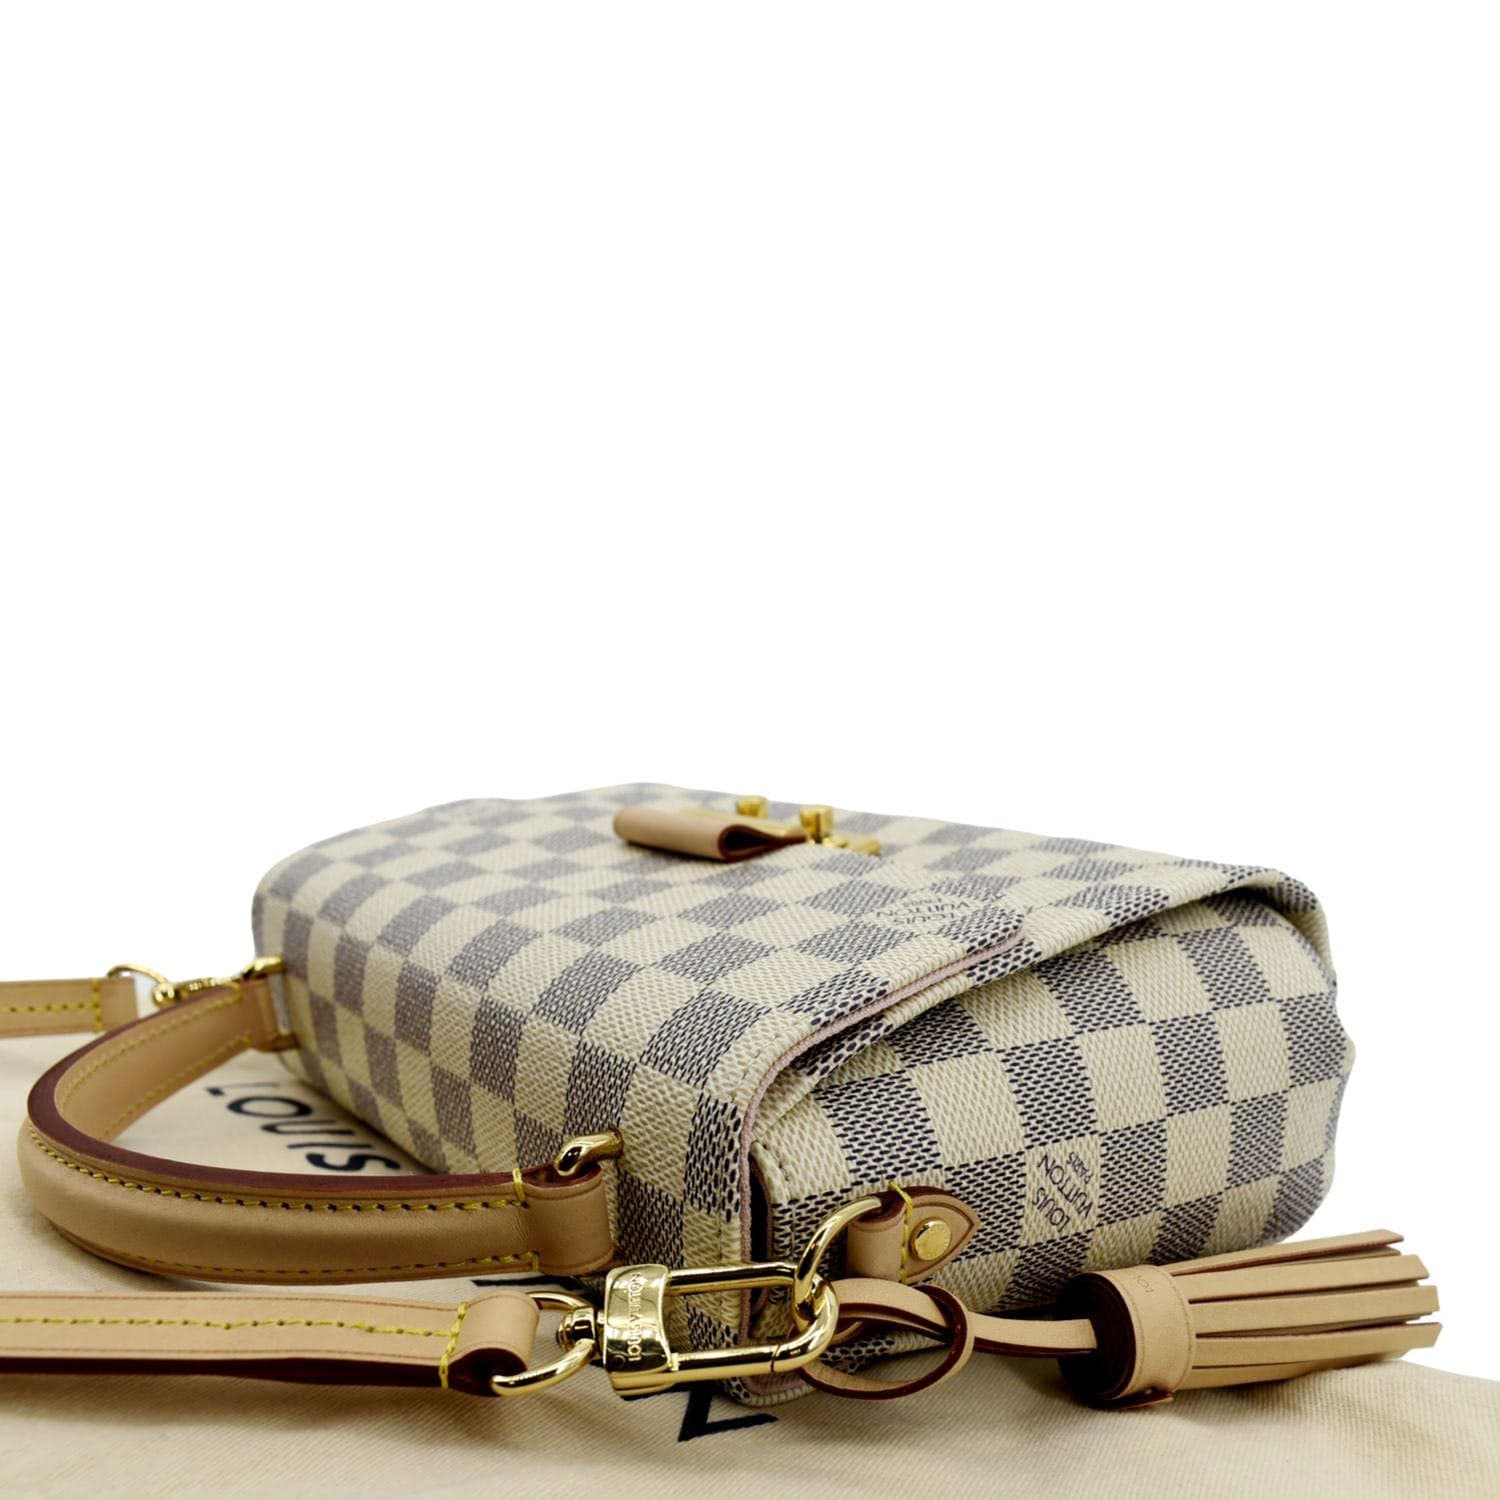 Louis Vuitton Croisette damier azur - Good or Bag